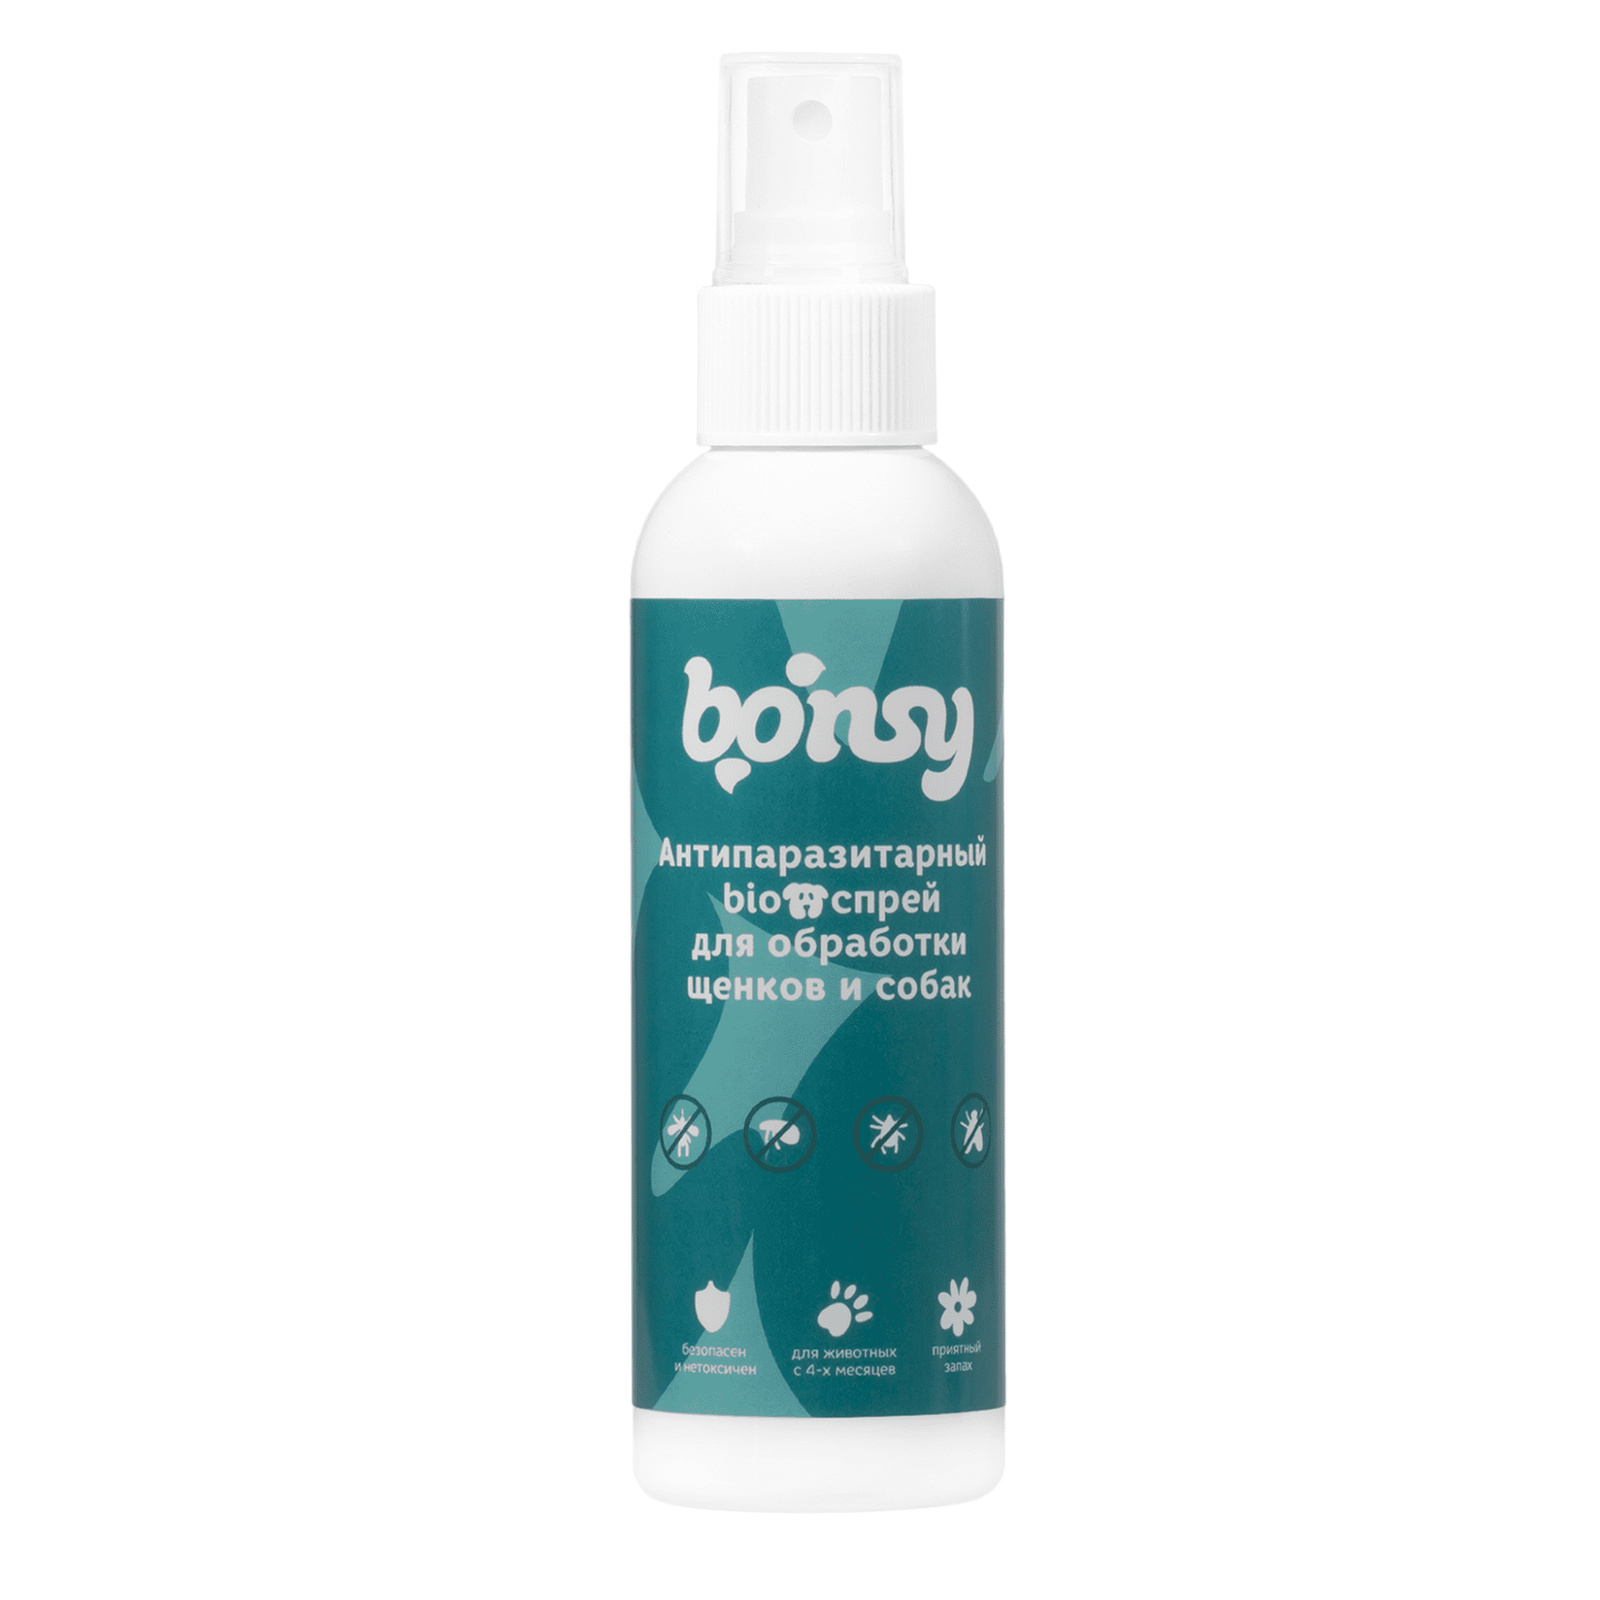 Bonsy Bonsy антипаразитарный БИОспрей для обработки щенков и собак (150 г) bonsy bonsy антипаразитарный биоспрей для обработки котят и кошек 150 г